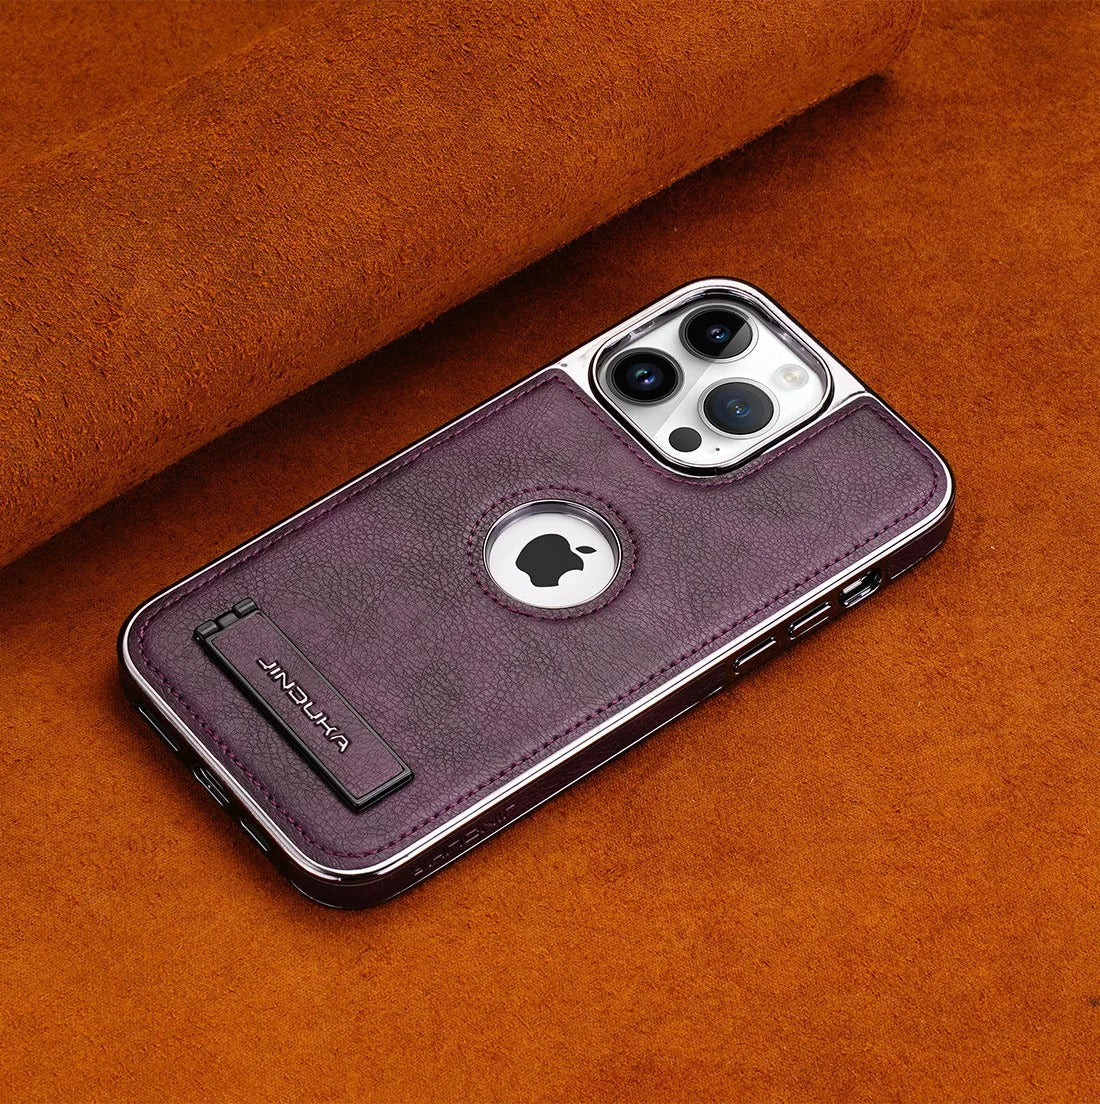 Jinduka Leather Case iPhone 11 Pro Max